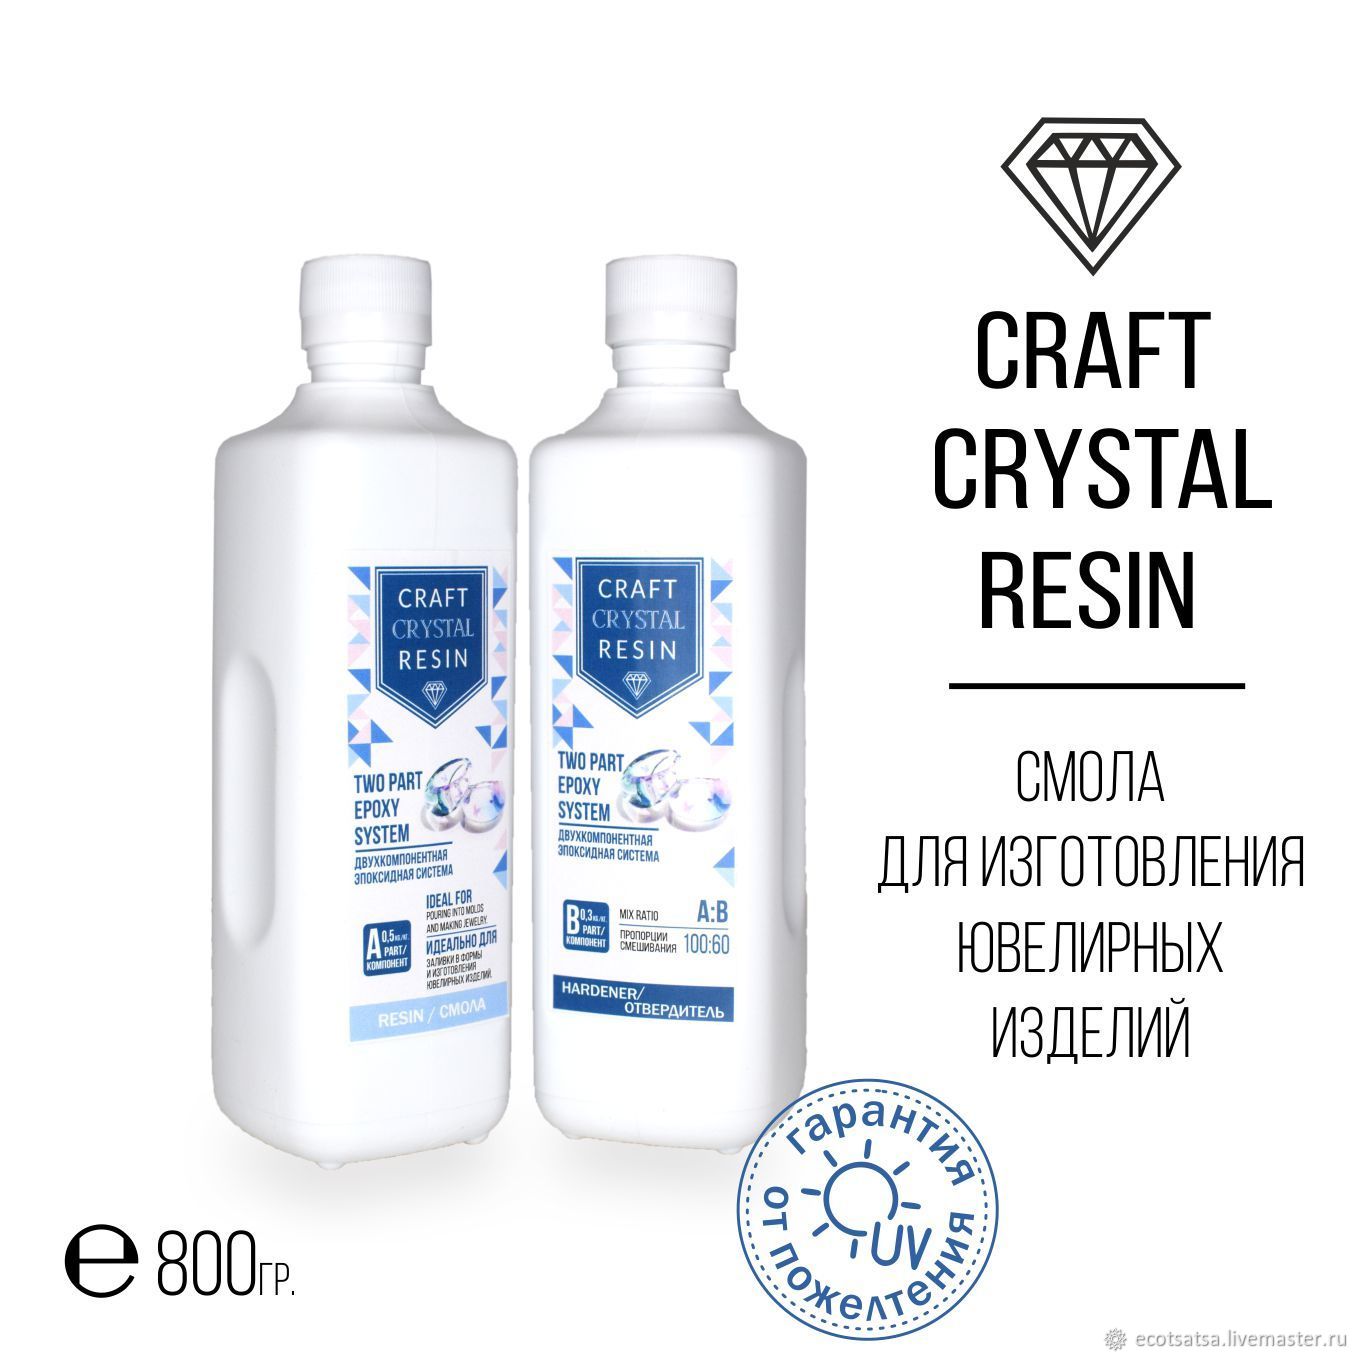 Crystal craft. Ювелирная смола «Craft Crystal Resin». Craft Crystal Resin состав. Comets Crystal крафт. Крафт из кристального ядра и слабой смолы.